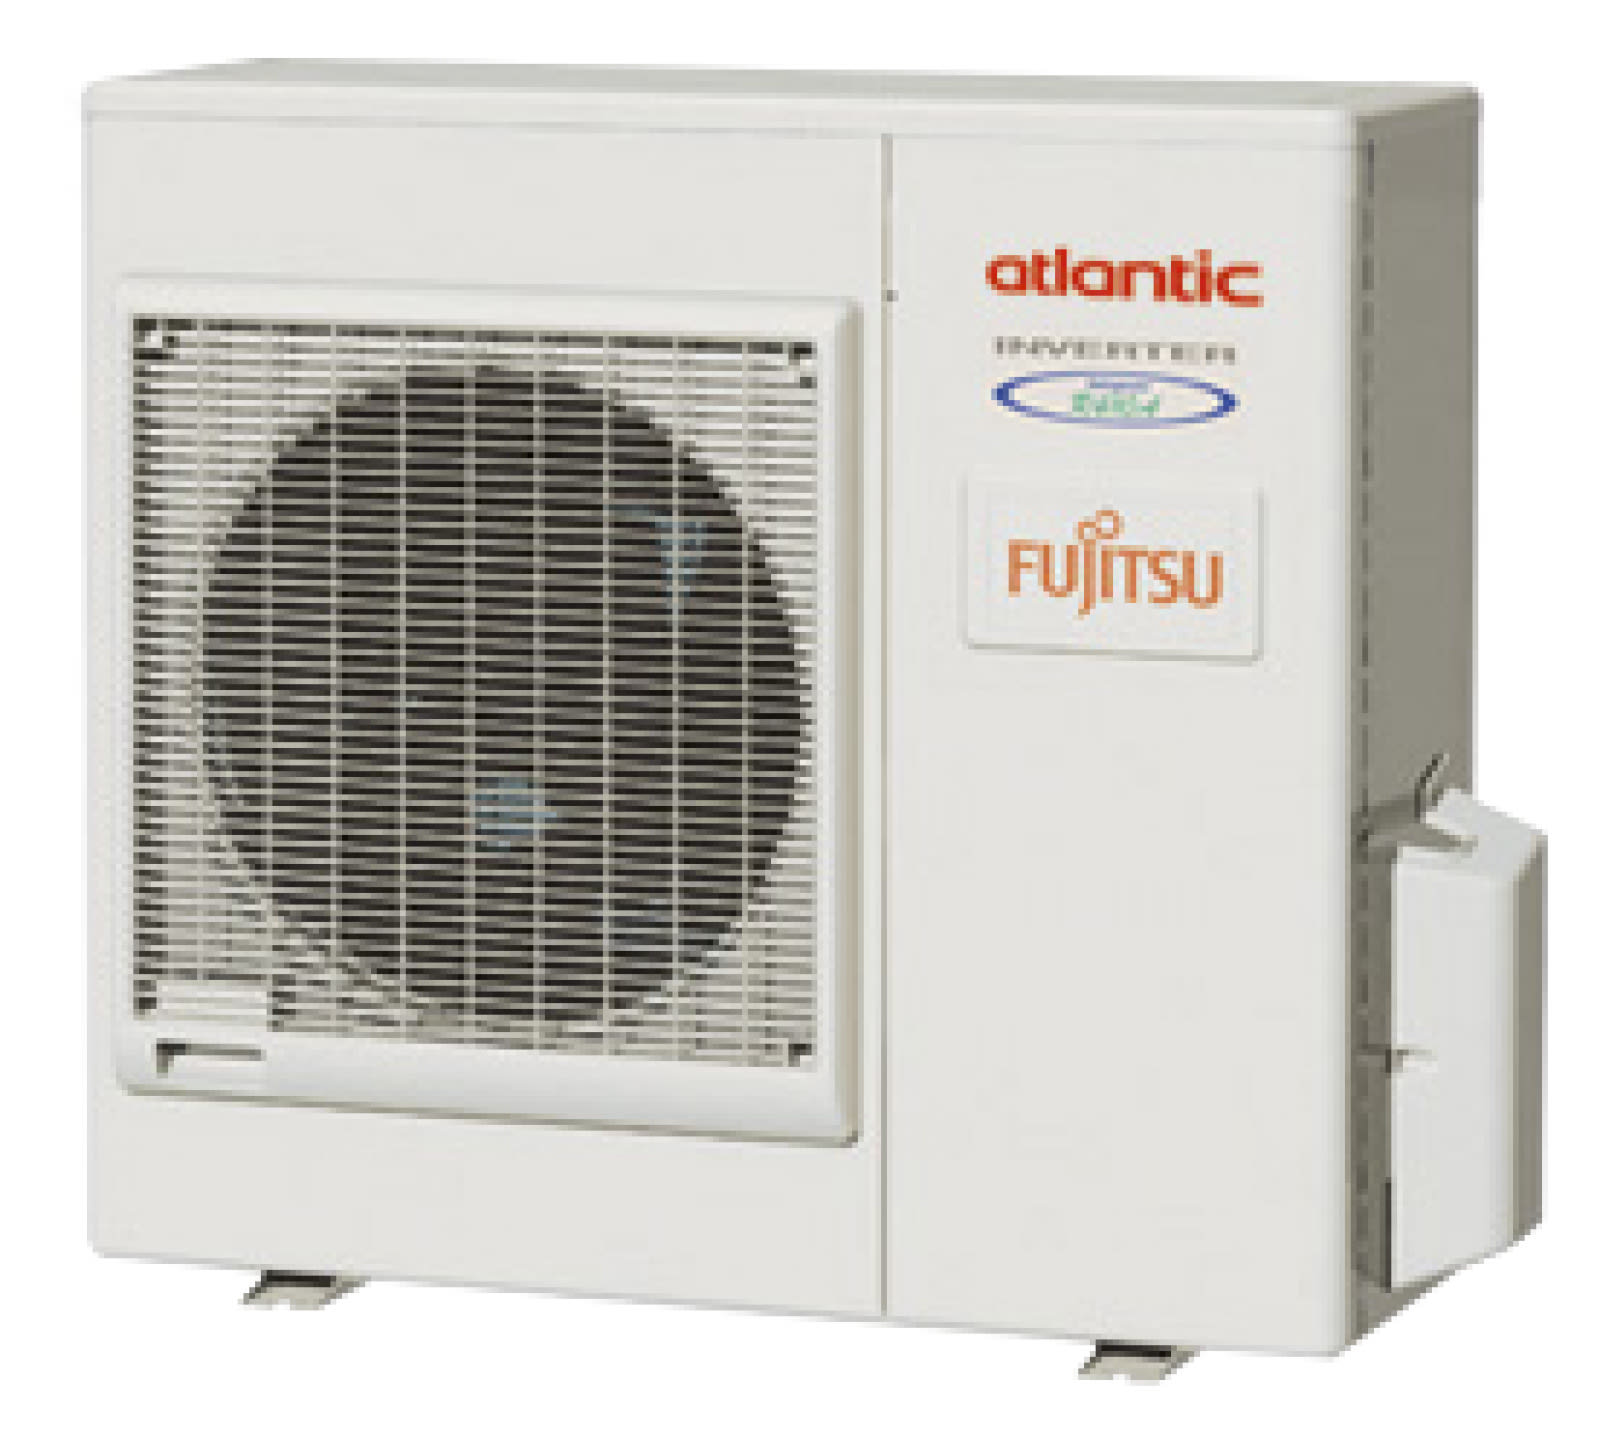 Atlantic Clim & Ventil - Aoyg 36 letl.ue - unite exterieure climatiseur gaine-plafonnier-cassette 9400 w